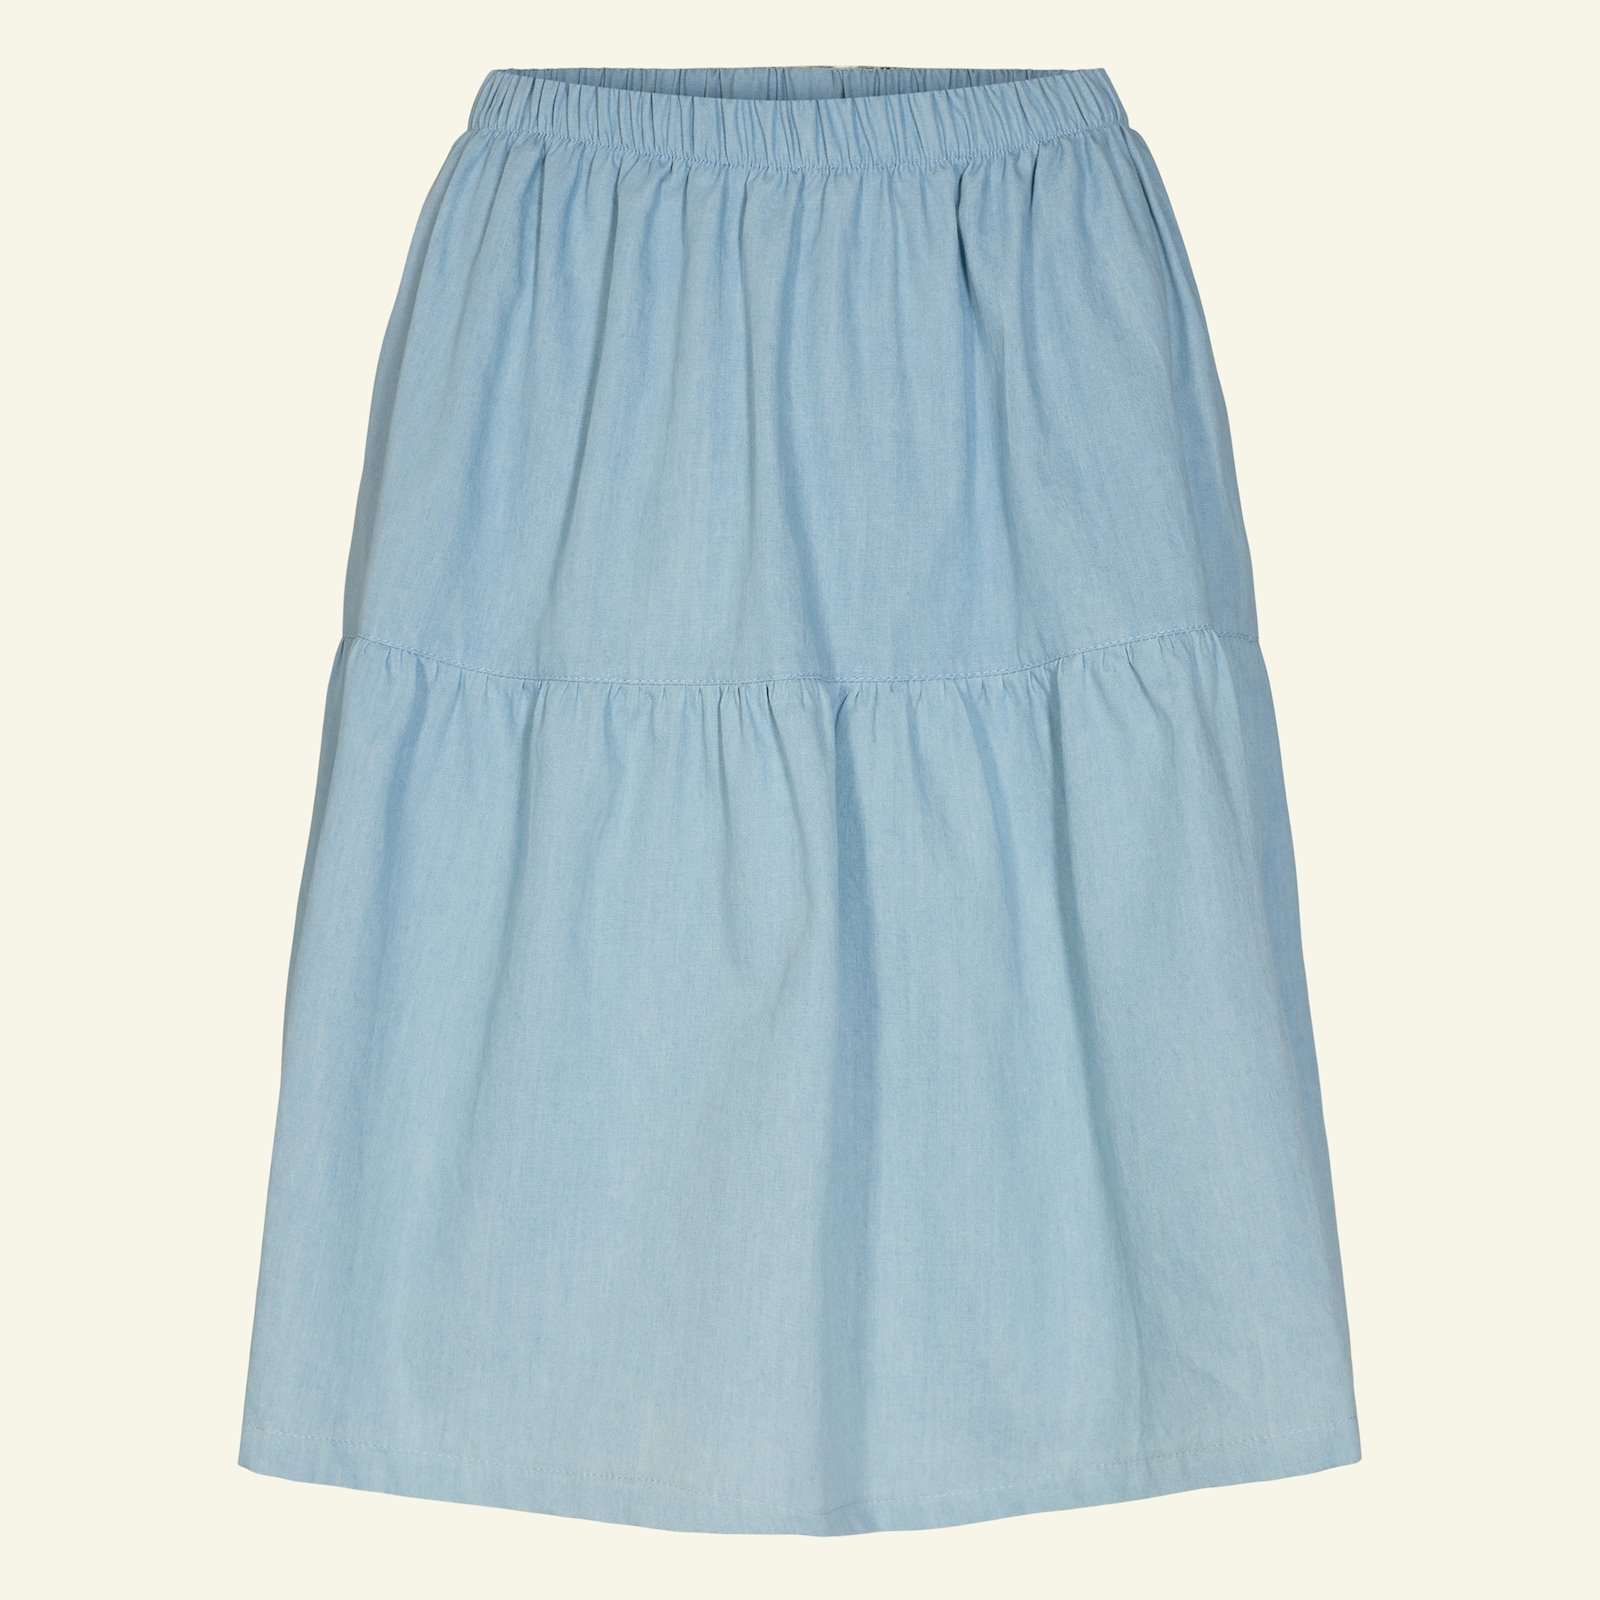 Split level skirt, M p21046_400312_sskit